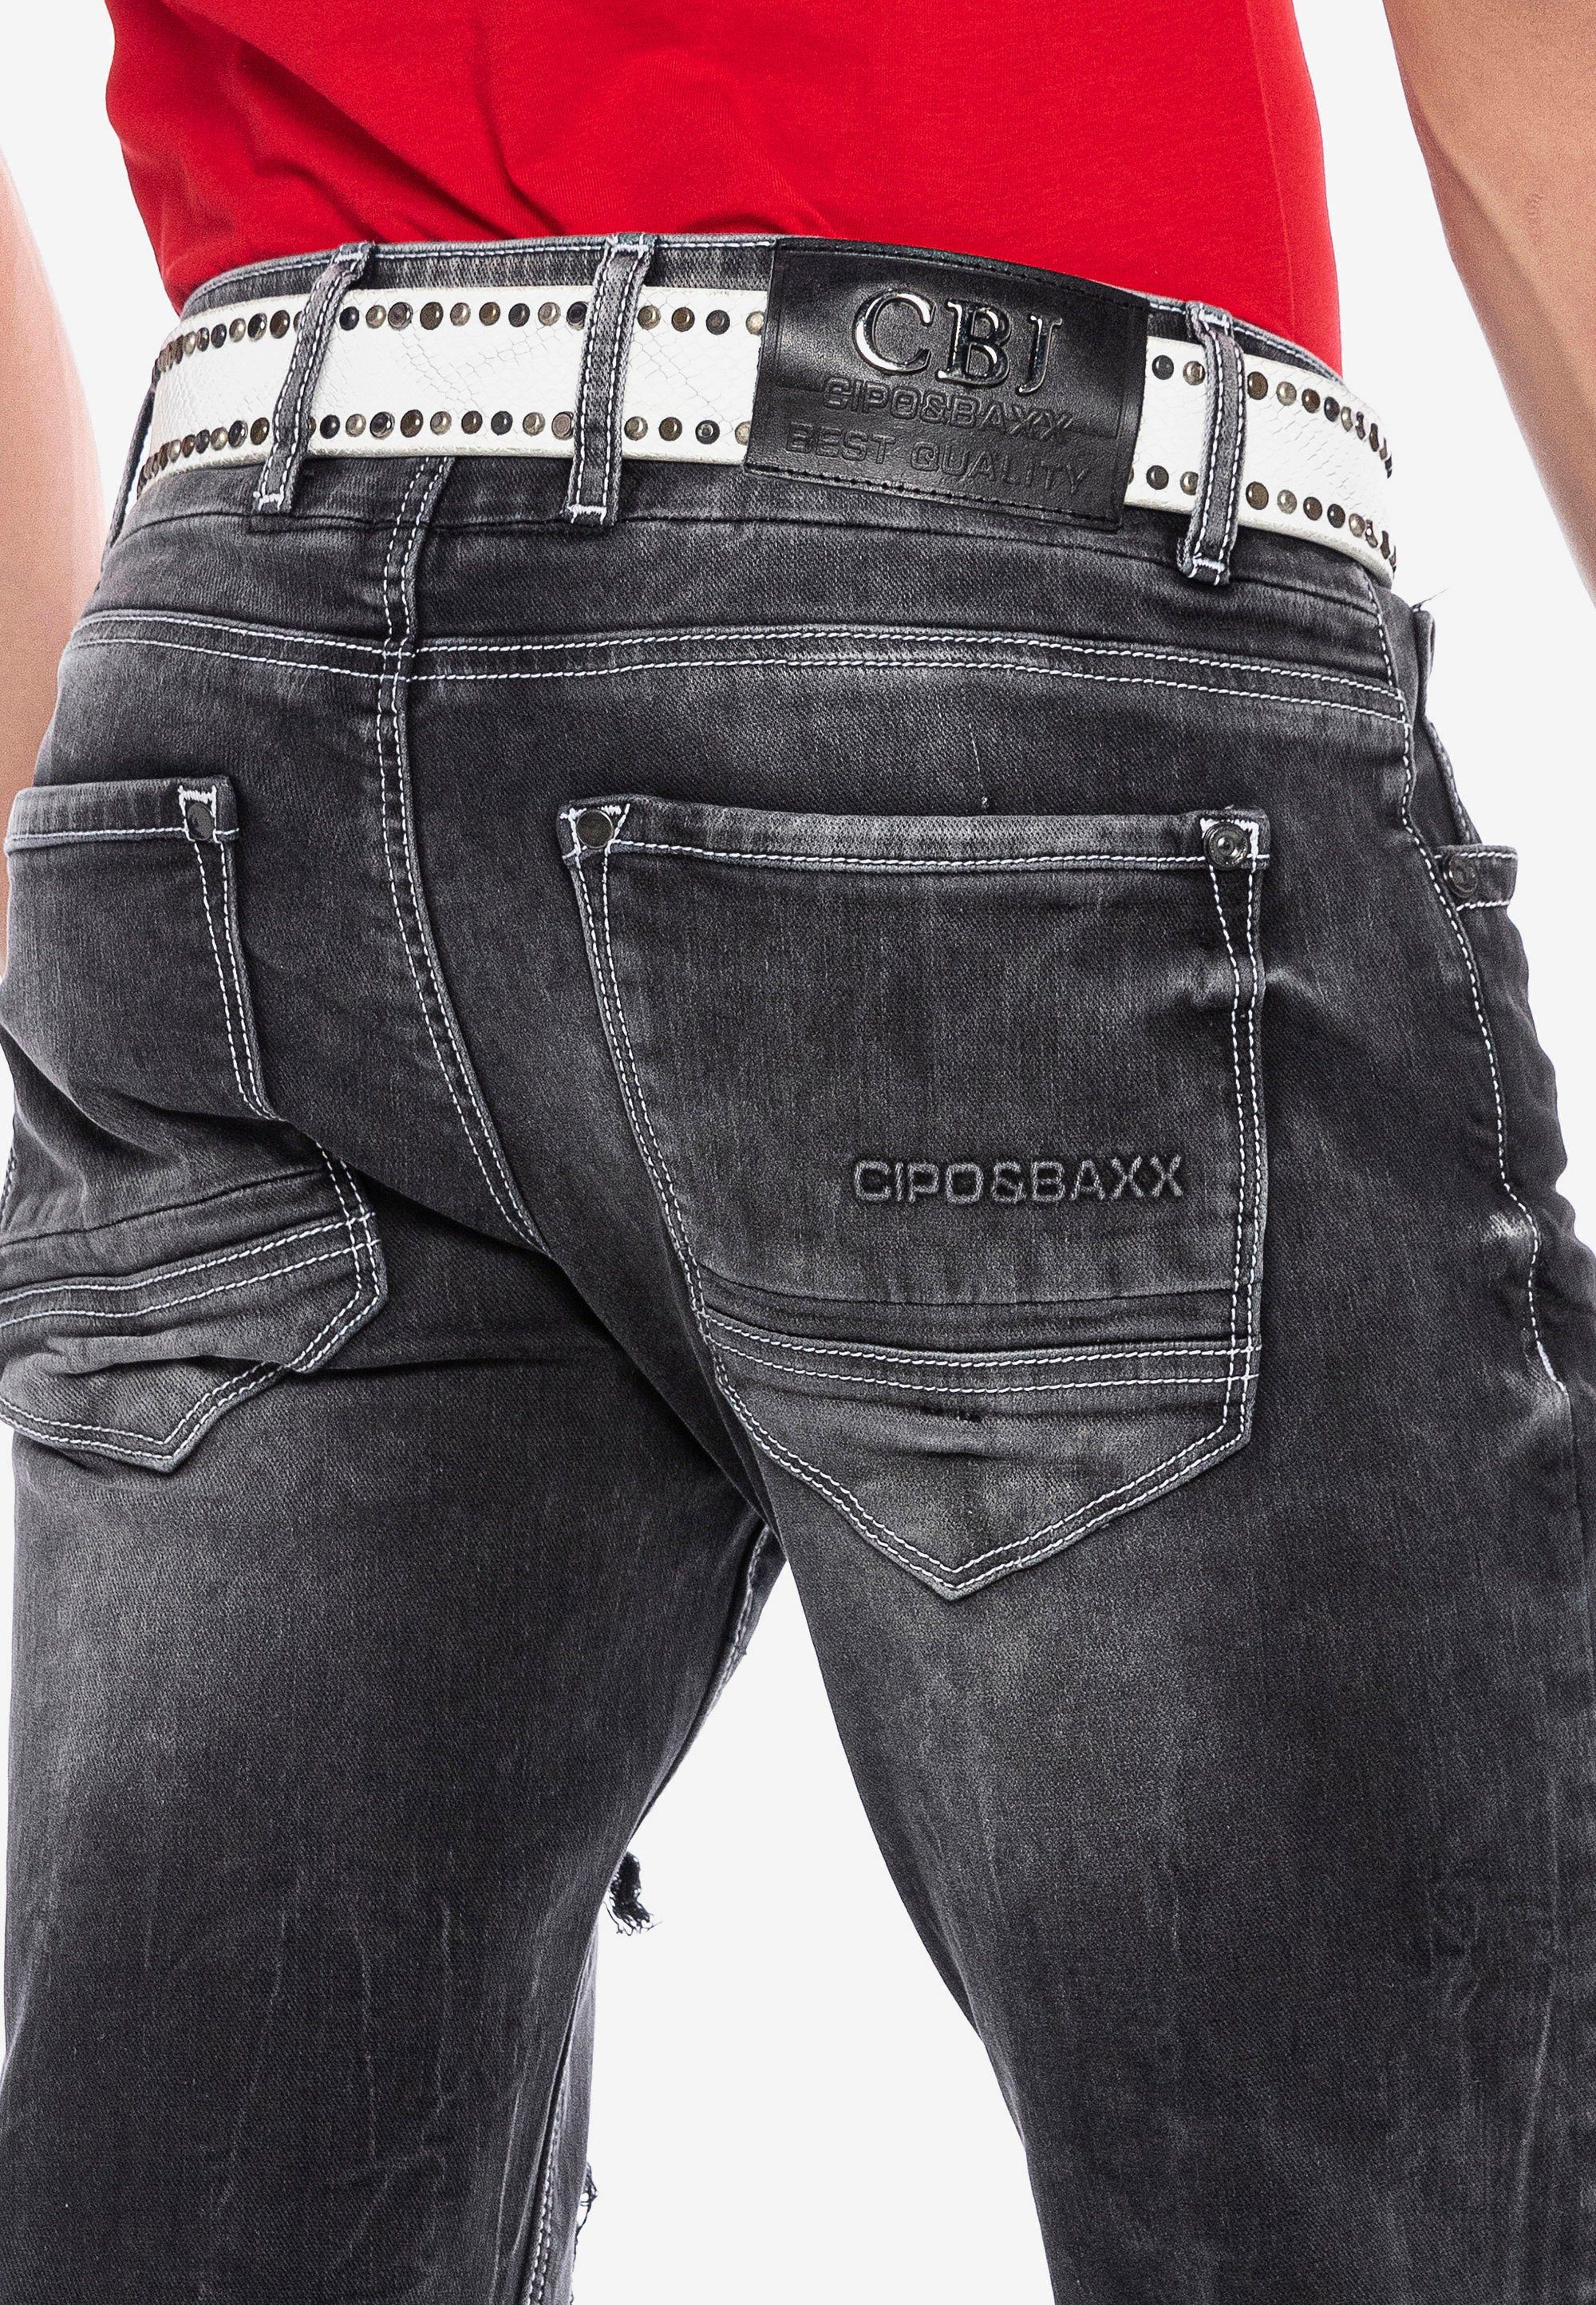 Bequeme mit Rissdetails Jeans & großen Cipo Baxx